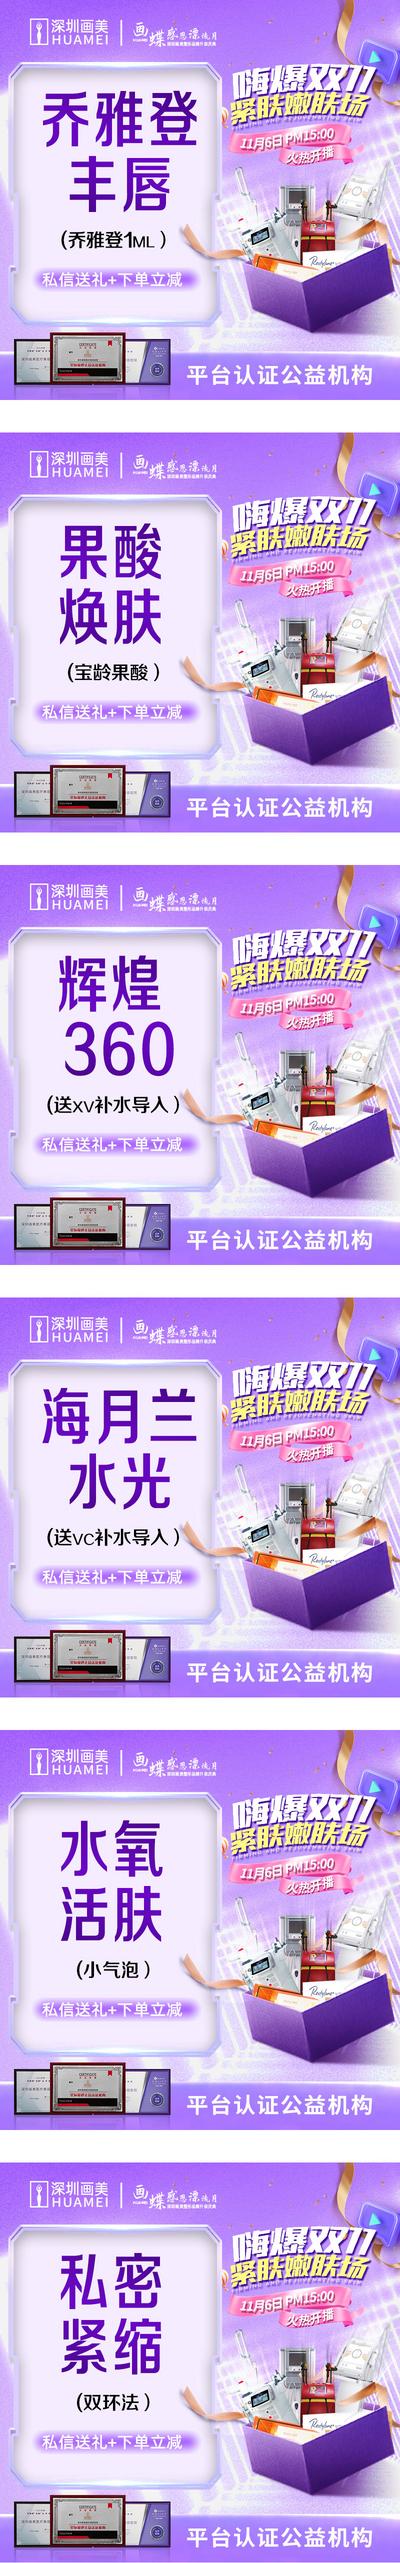 南门网 广告 海报 电商 banner 美团 头图 双十一